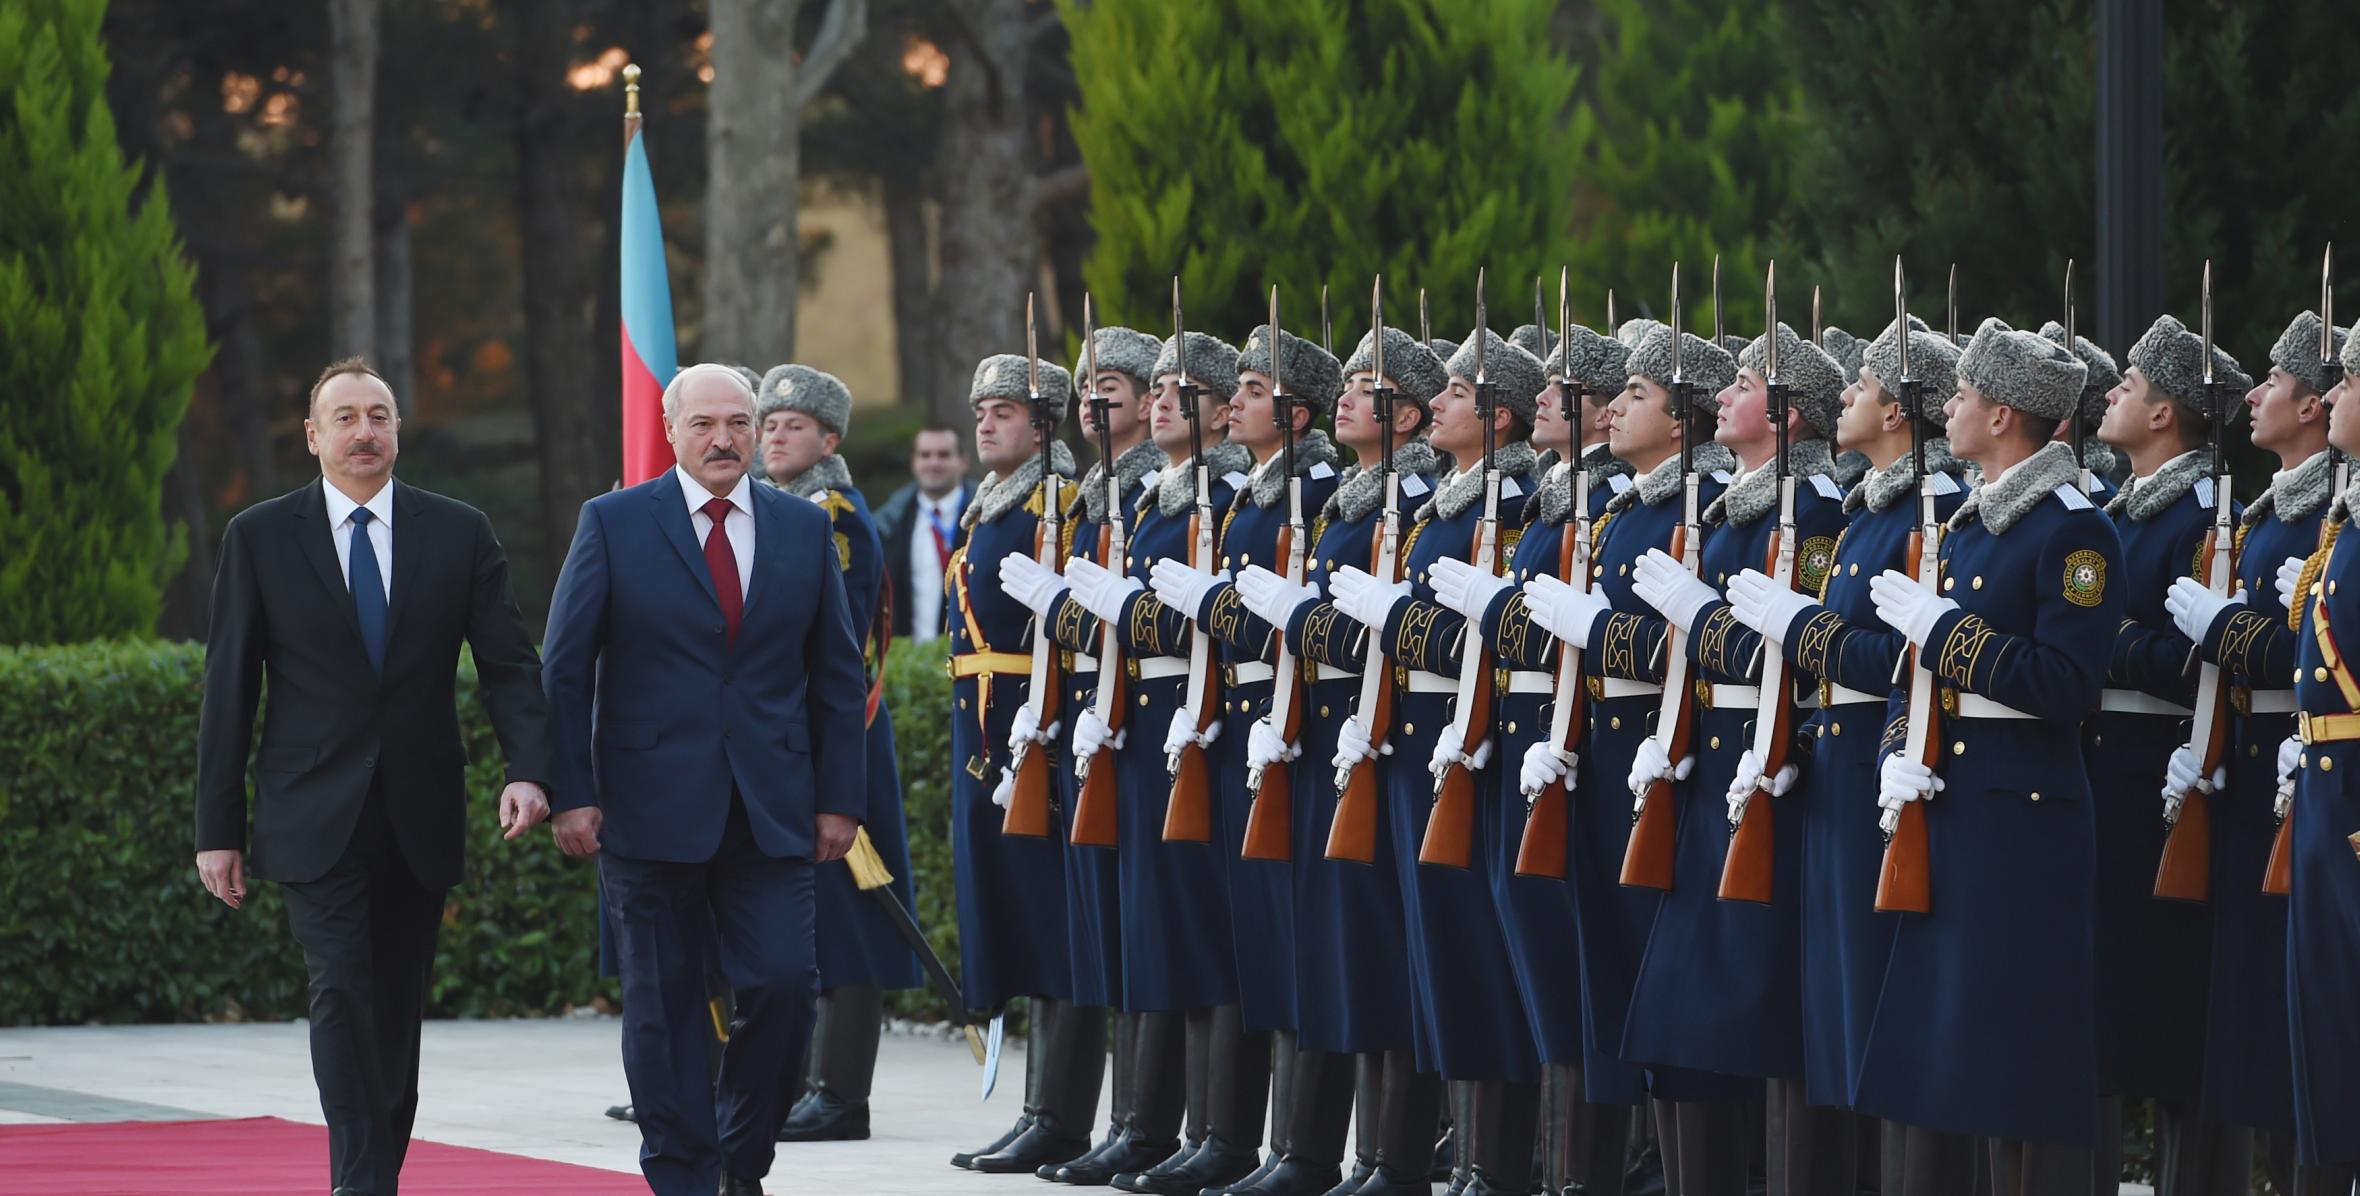 Official welcoming ceremony was held for Belarus President Alexander Lukashenko